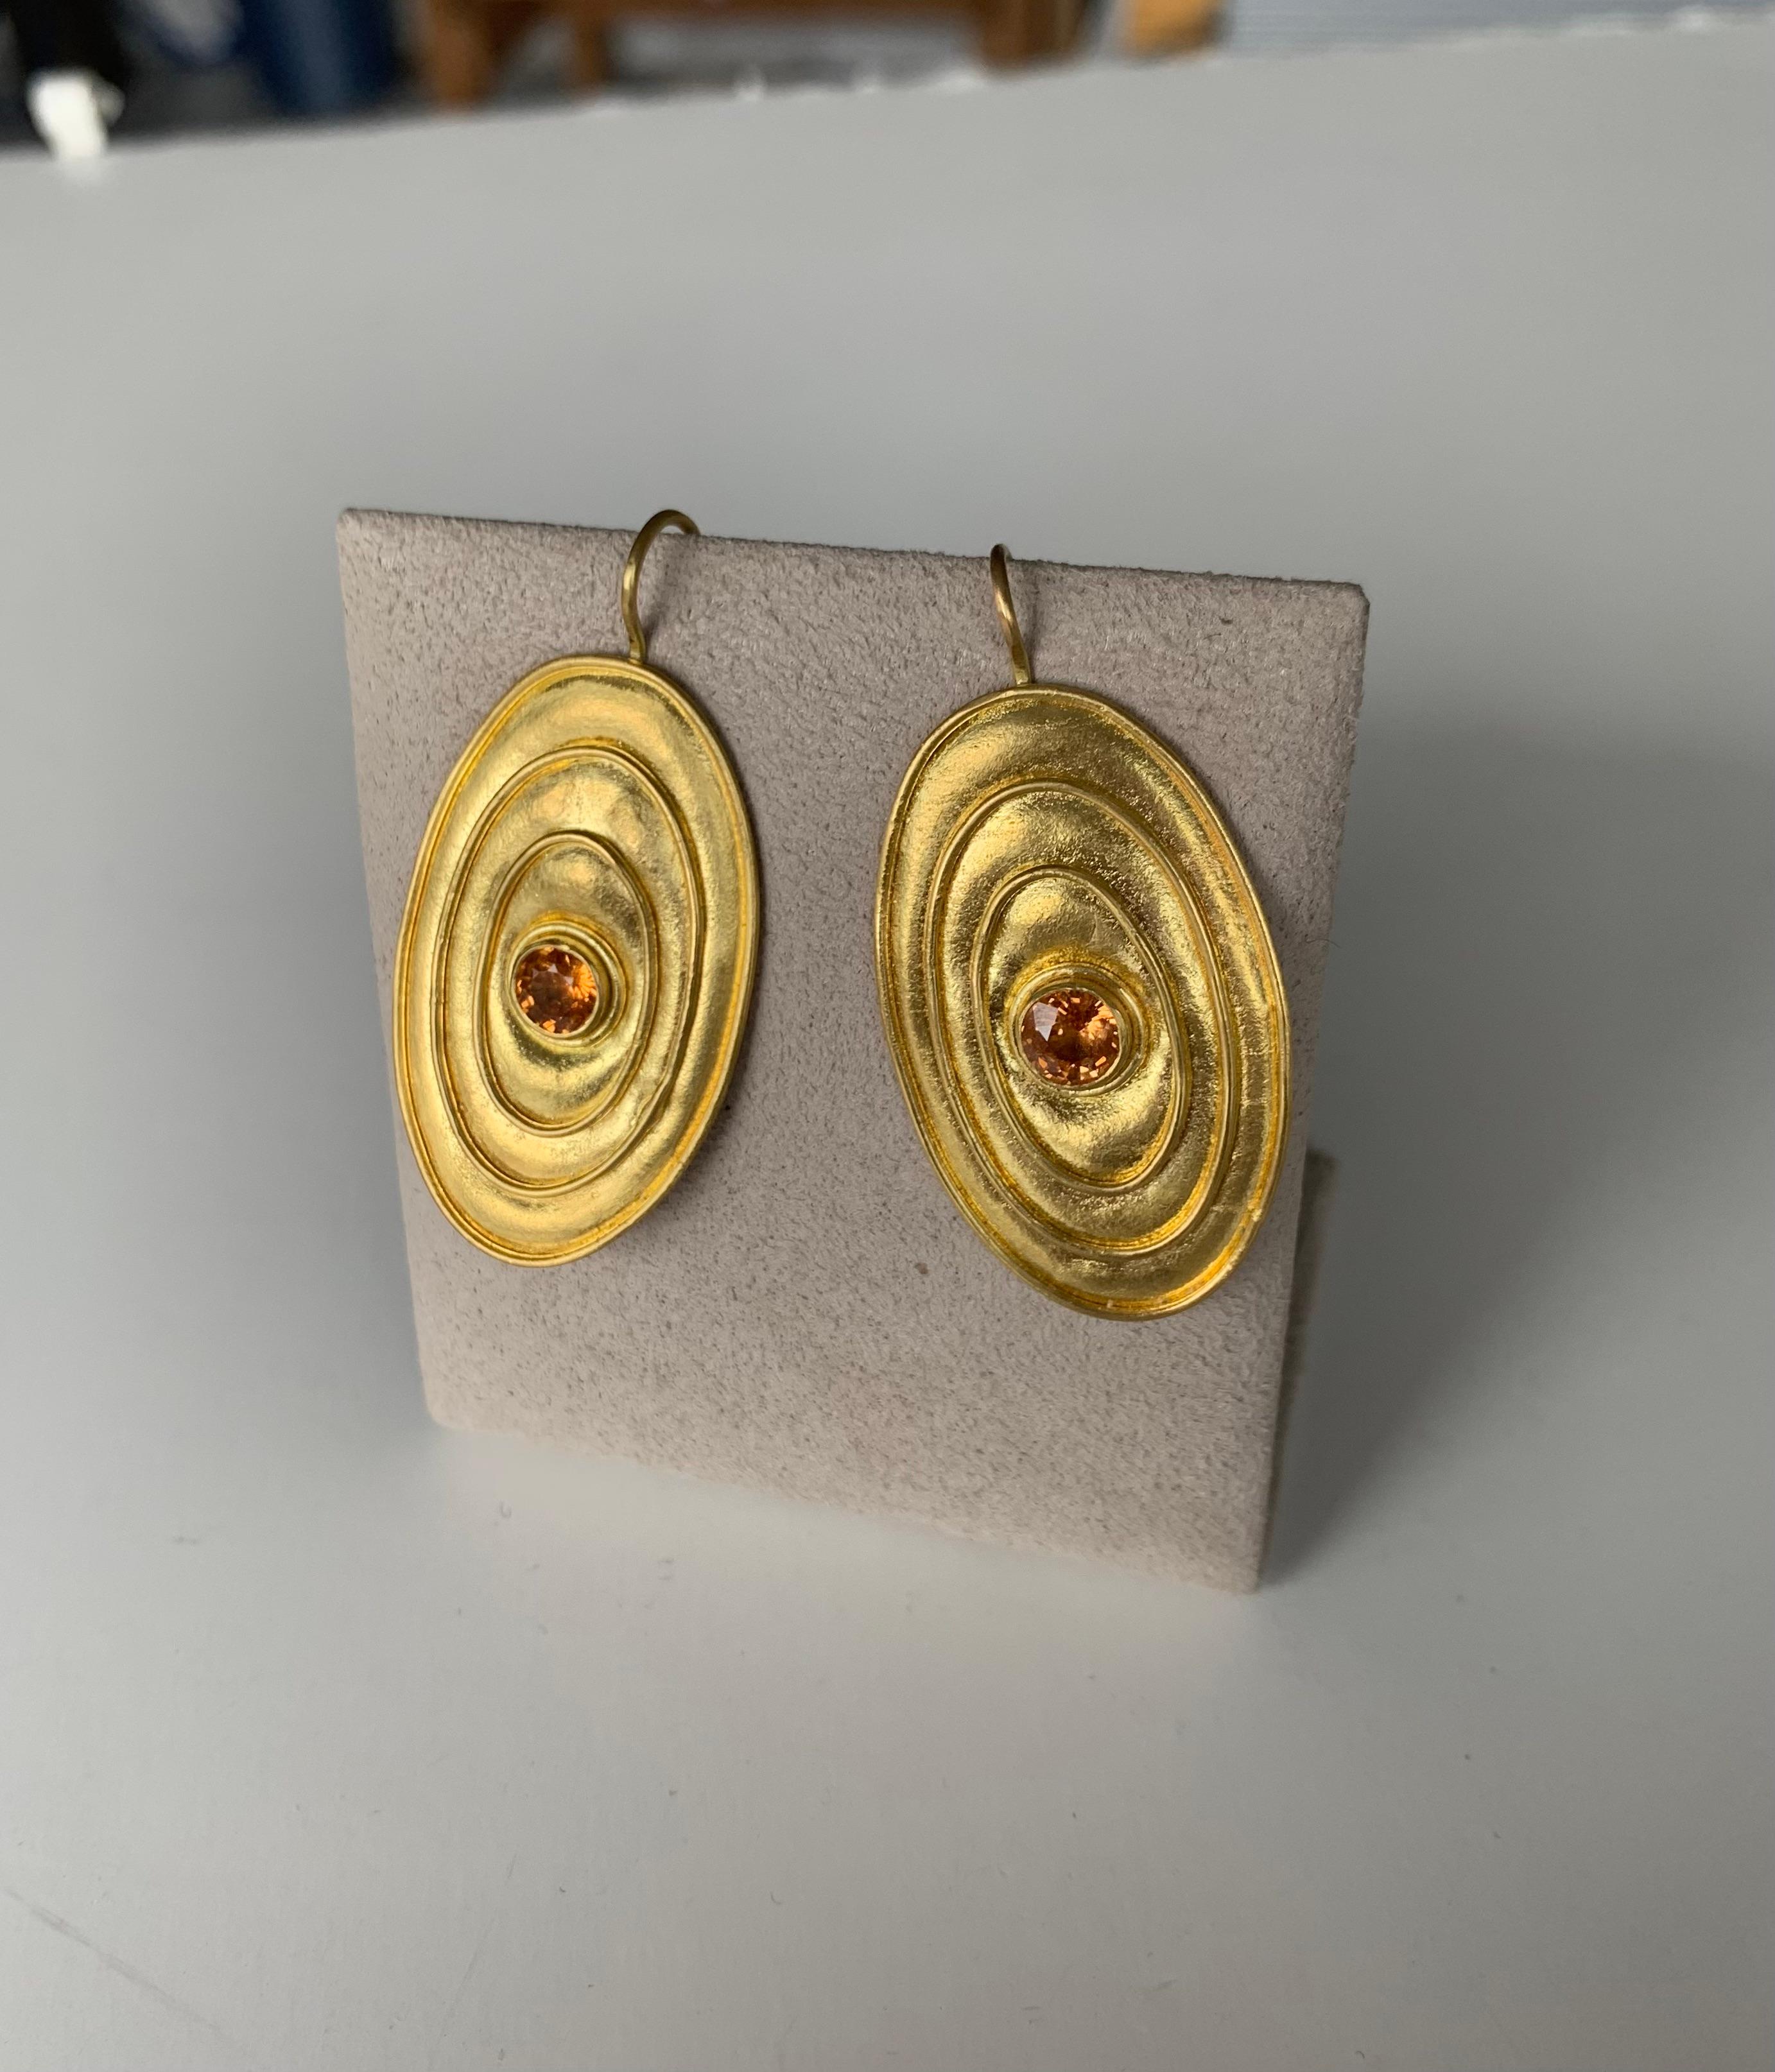 Artist 22 Karat Gold Earrings with Mandarin Garnets